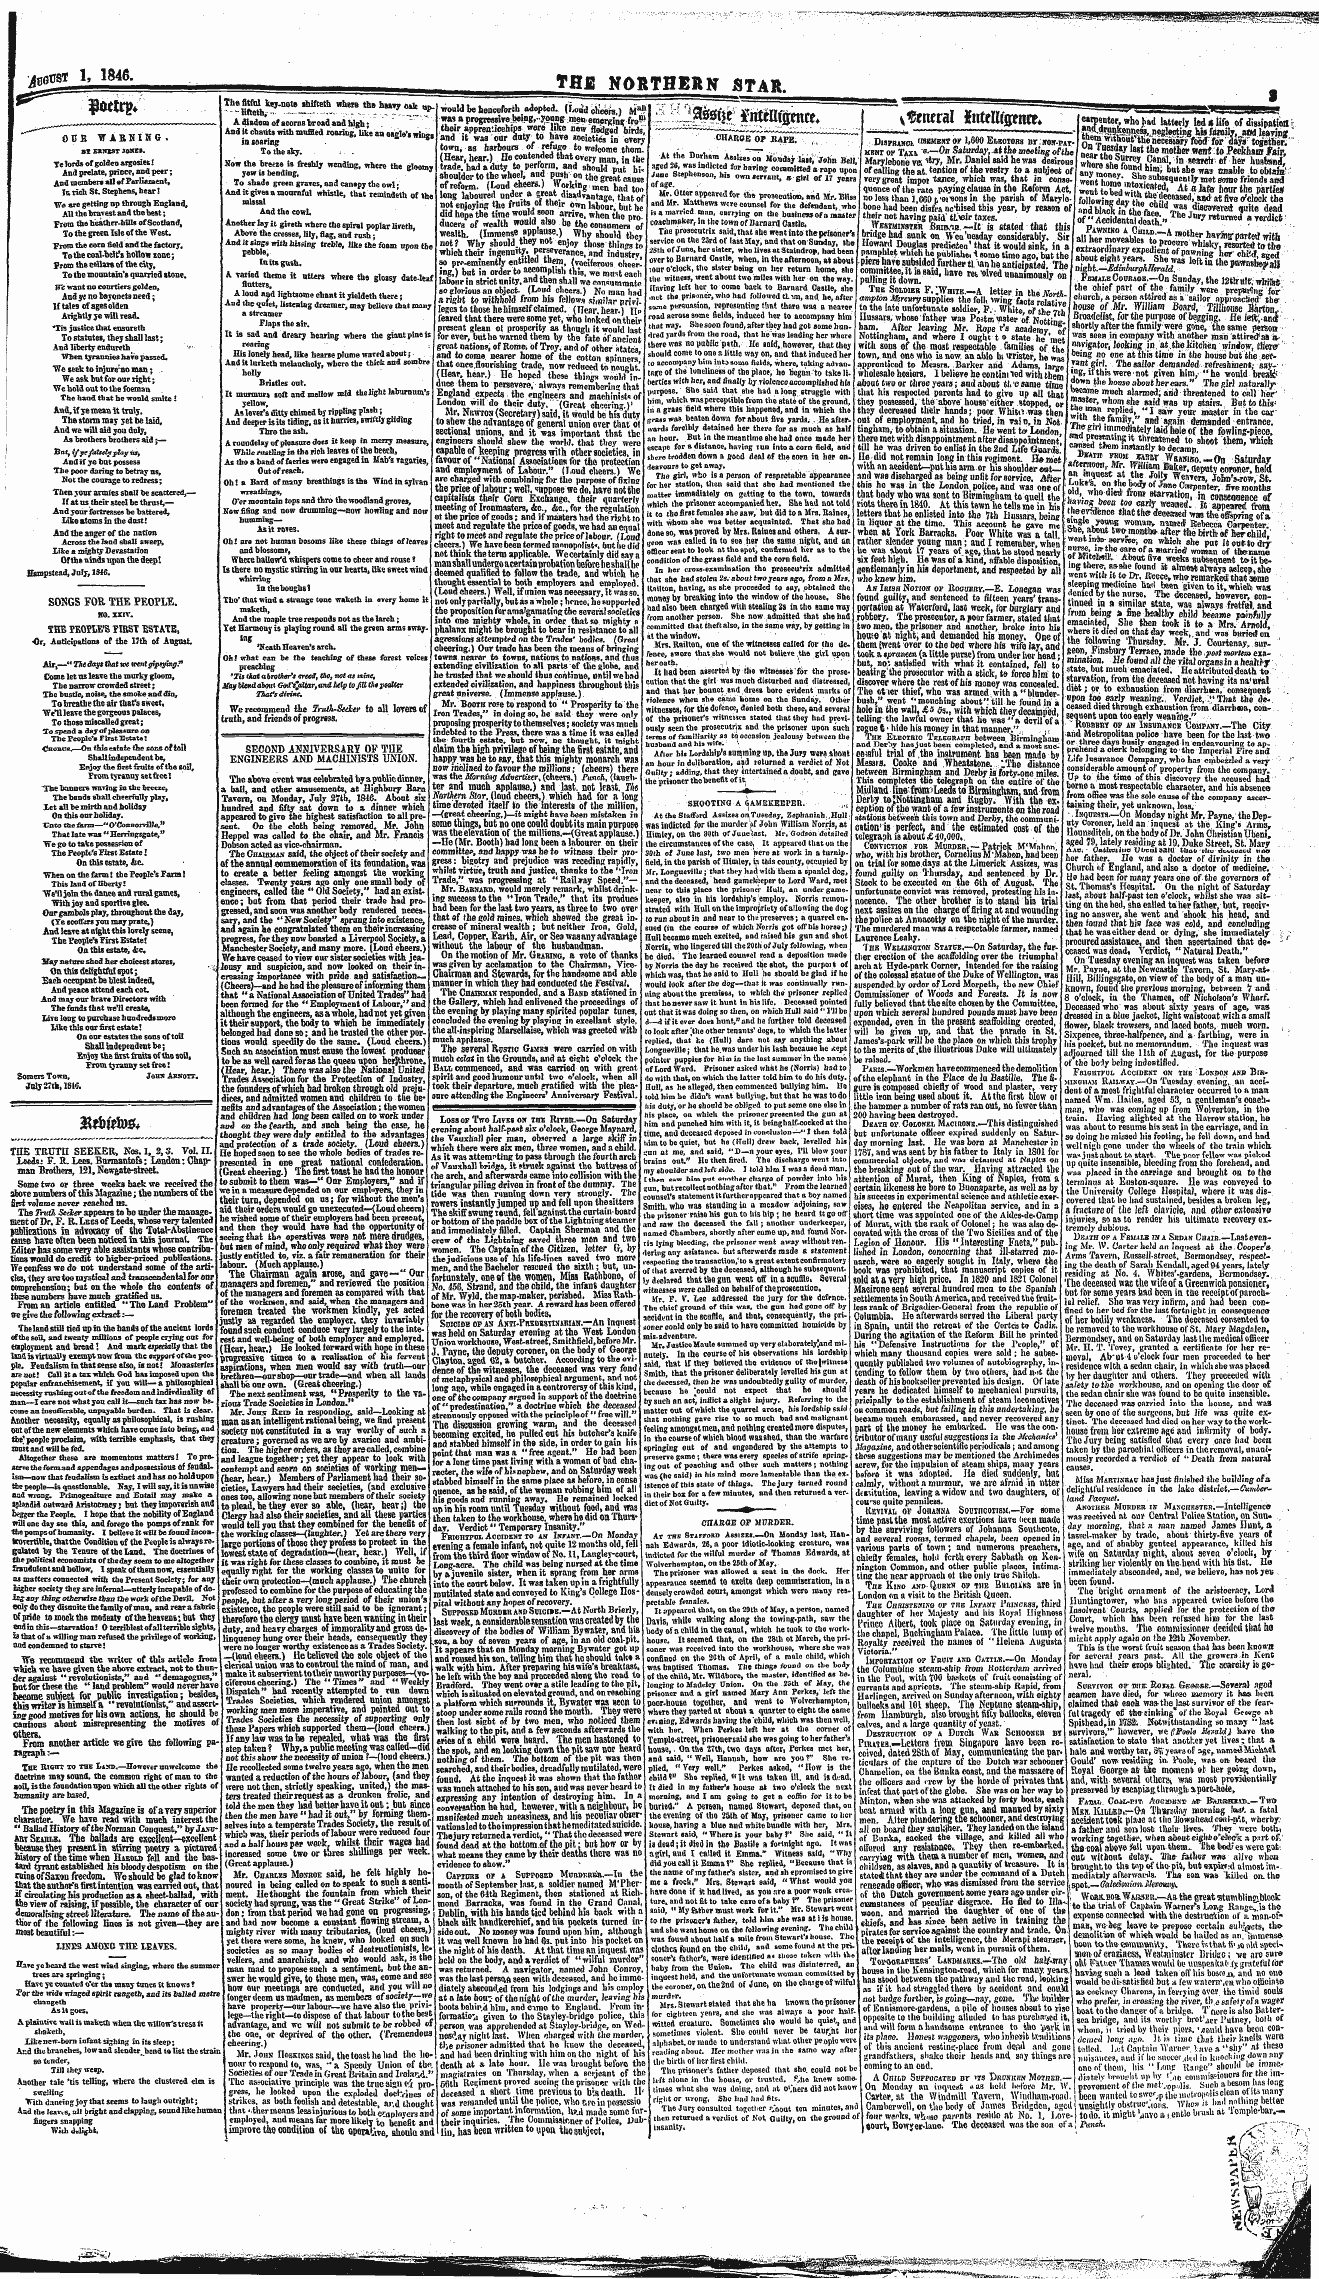 Northern Star (1837-1852): jS F Y, 2nd edition - _R ,W*. :. L^^Teftr ^Ntemsettre